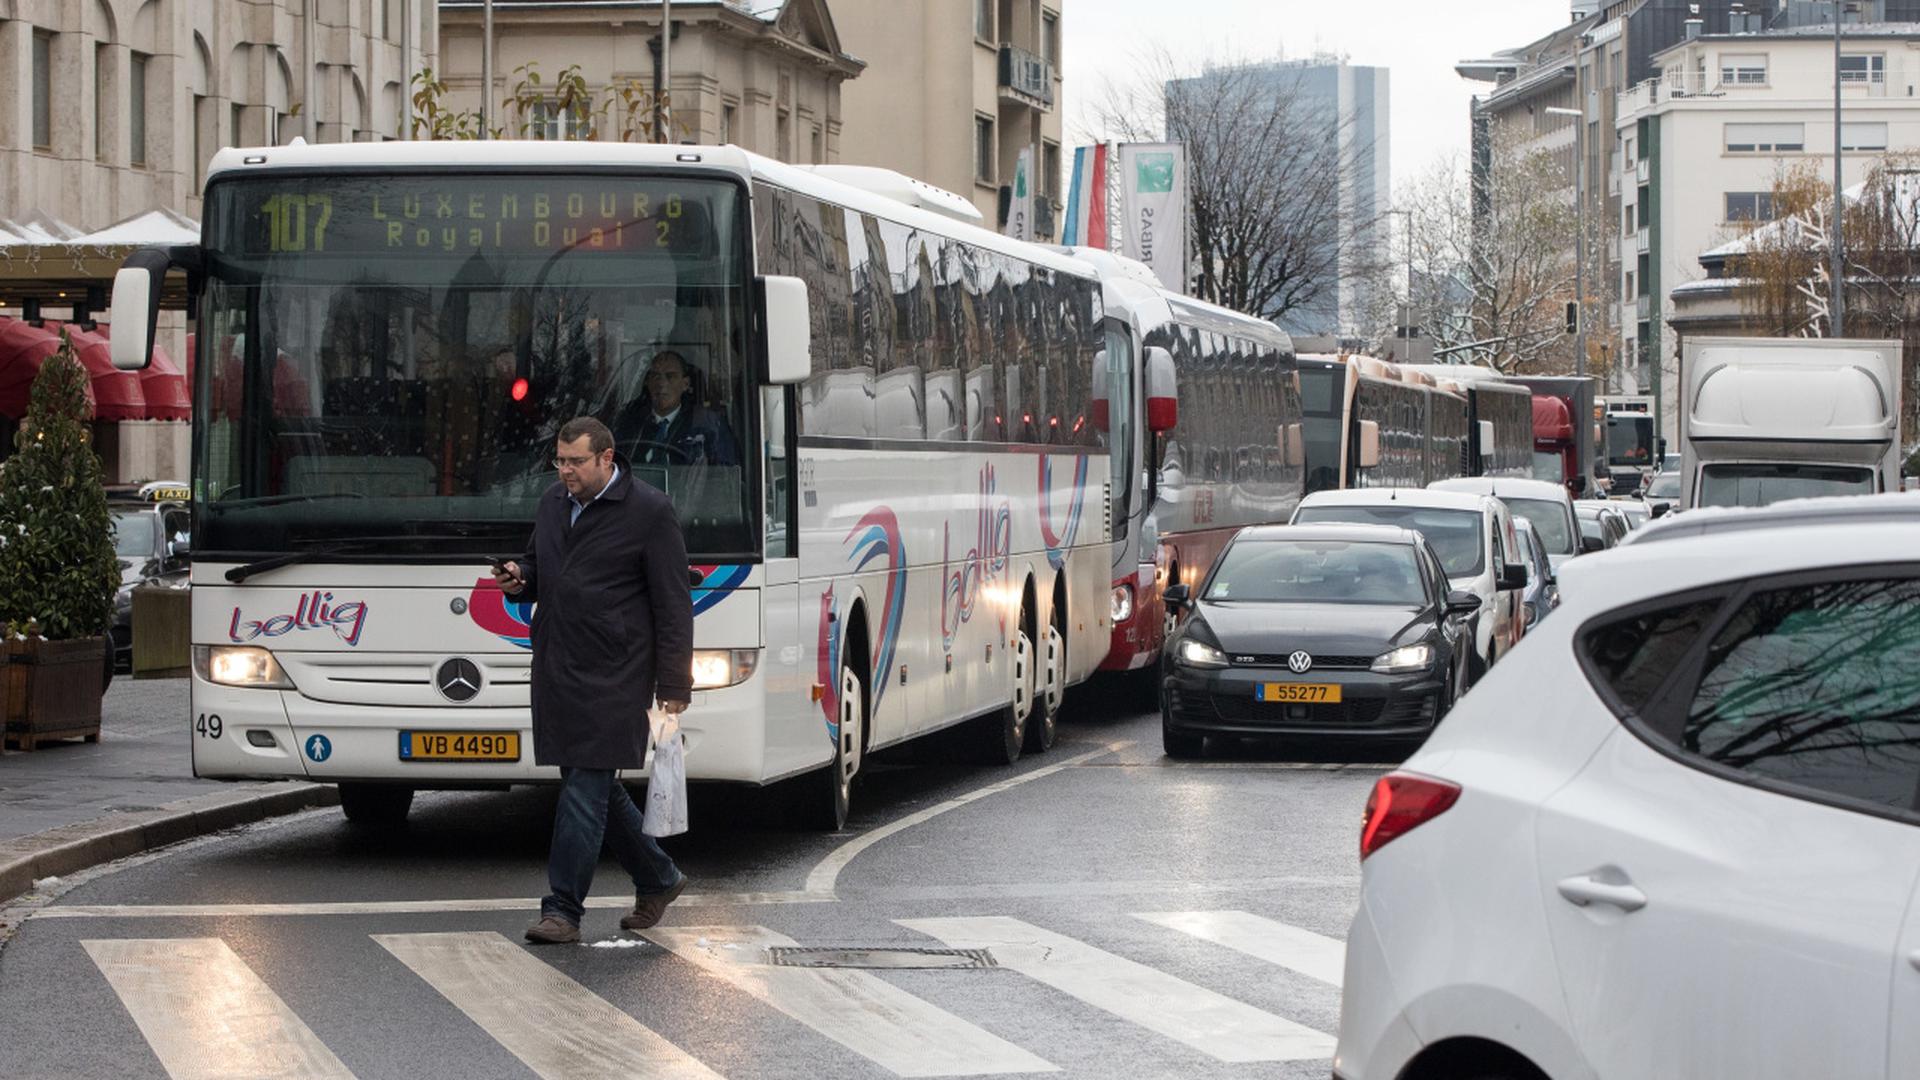 Le tram devrait aider à mettre fin au chaos quotidien des bus dans le centre-ville.